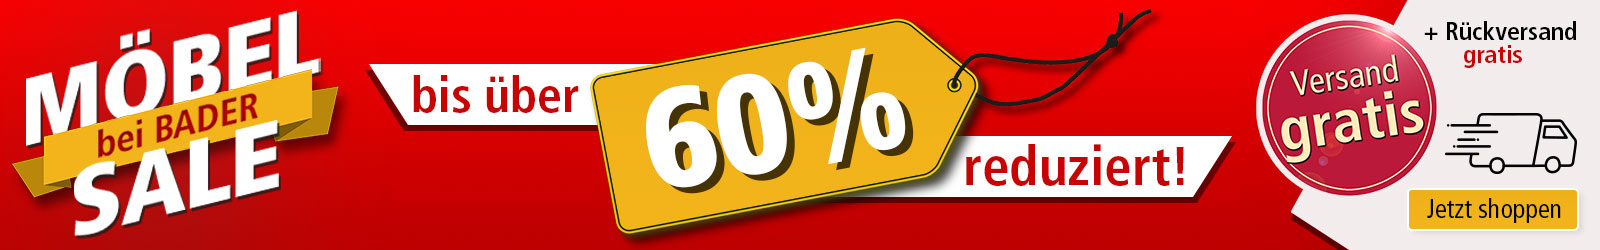 Möbel Sale bei BADER - bis über 60% reduziert!